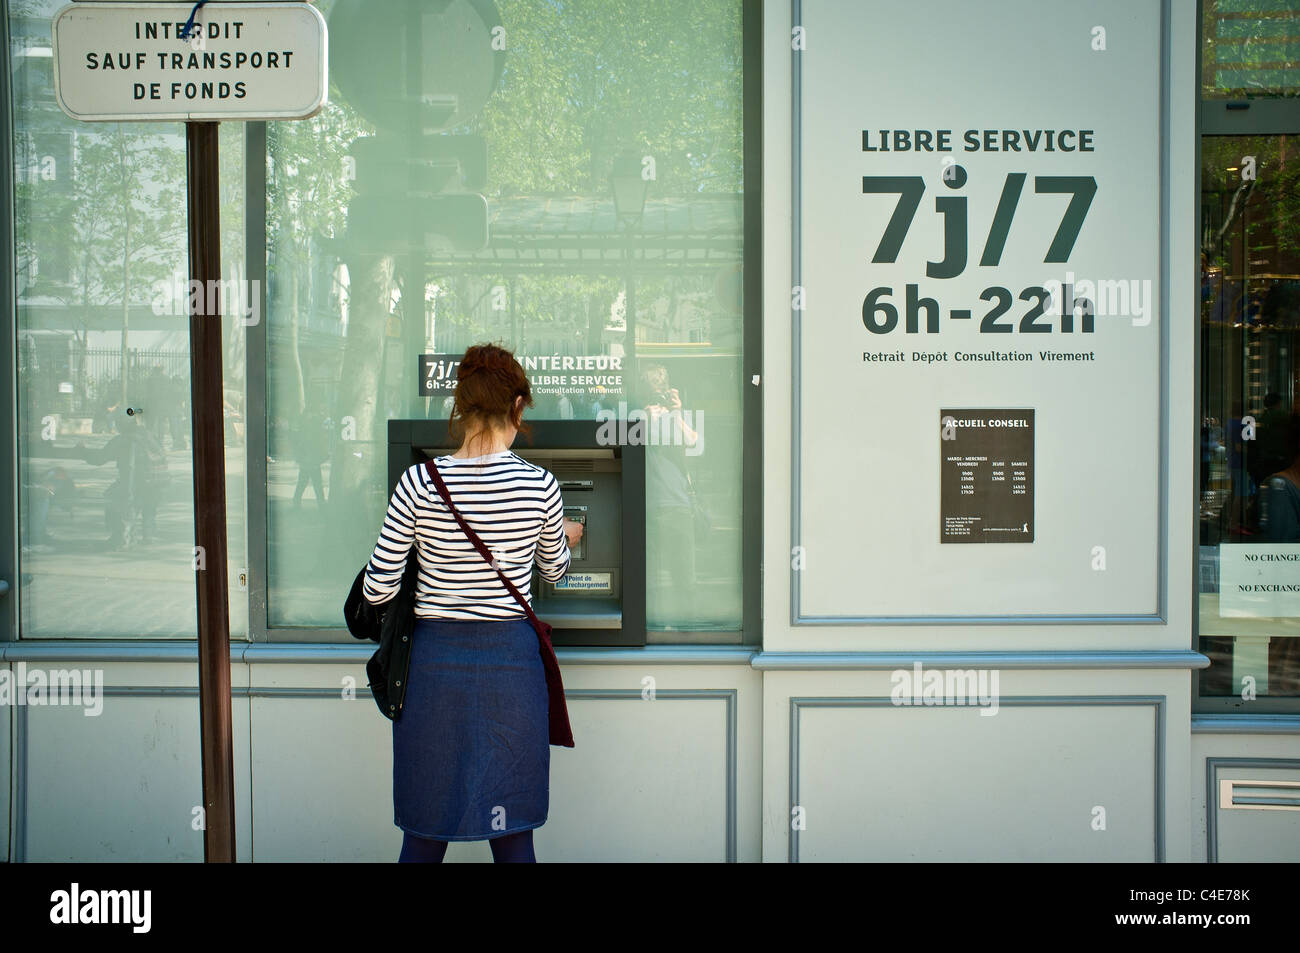 Woman dispensing cash at a cash dispenser, Montmartre, Paris Stock Photo